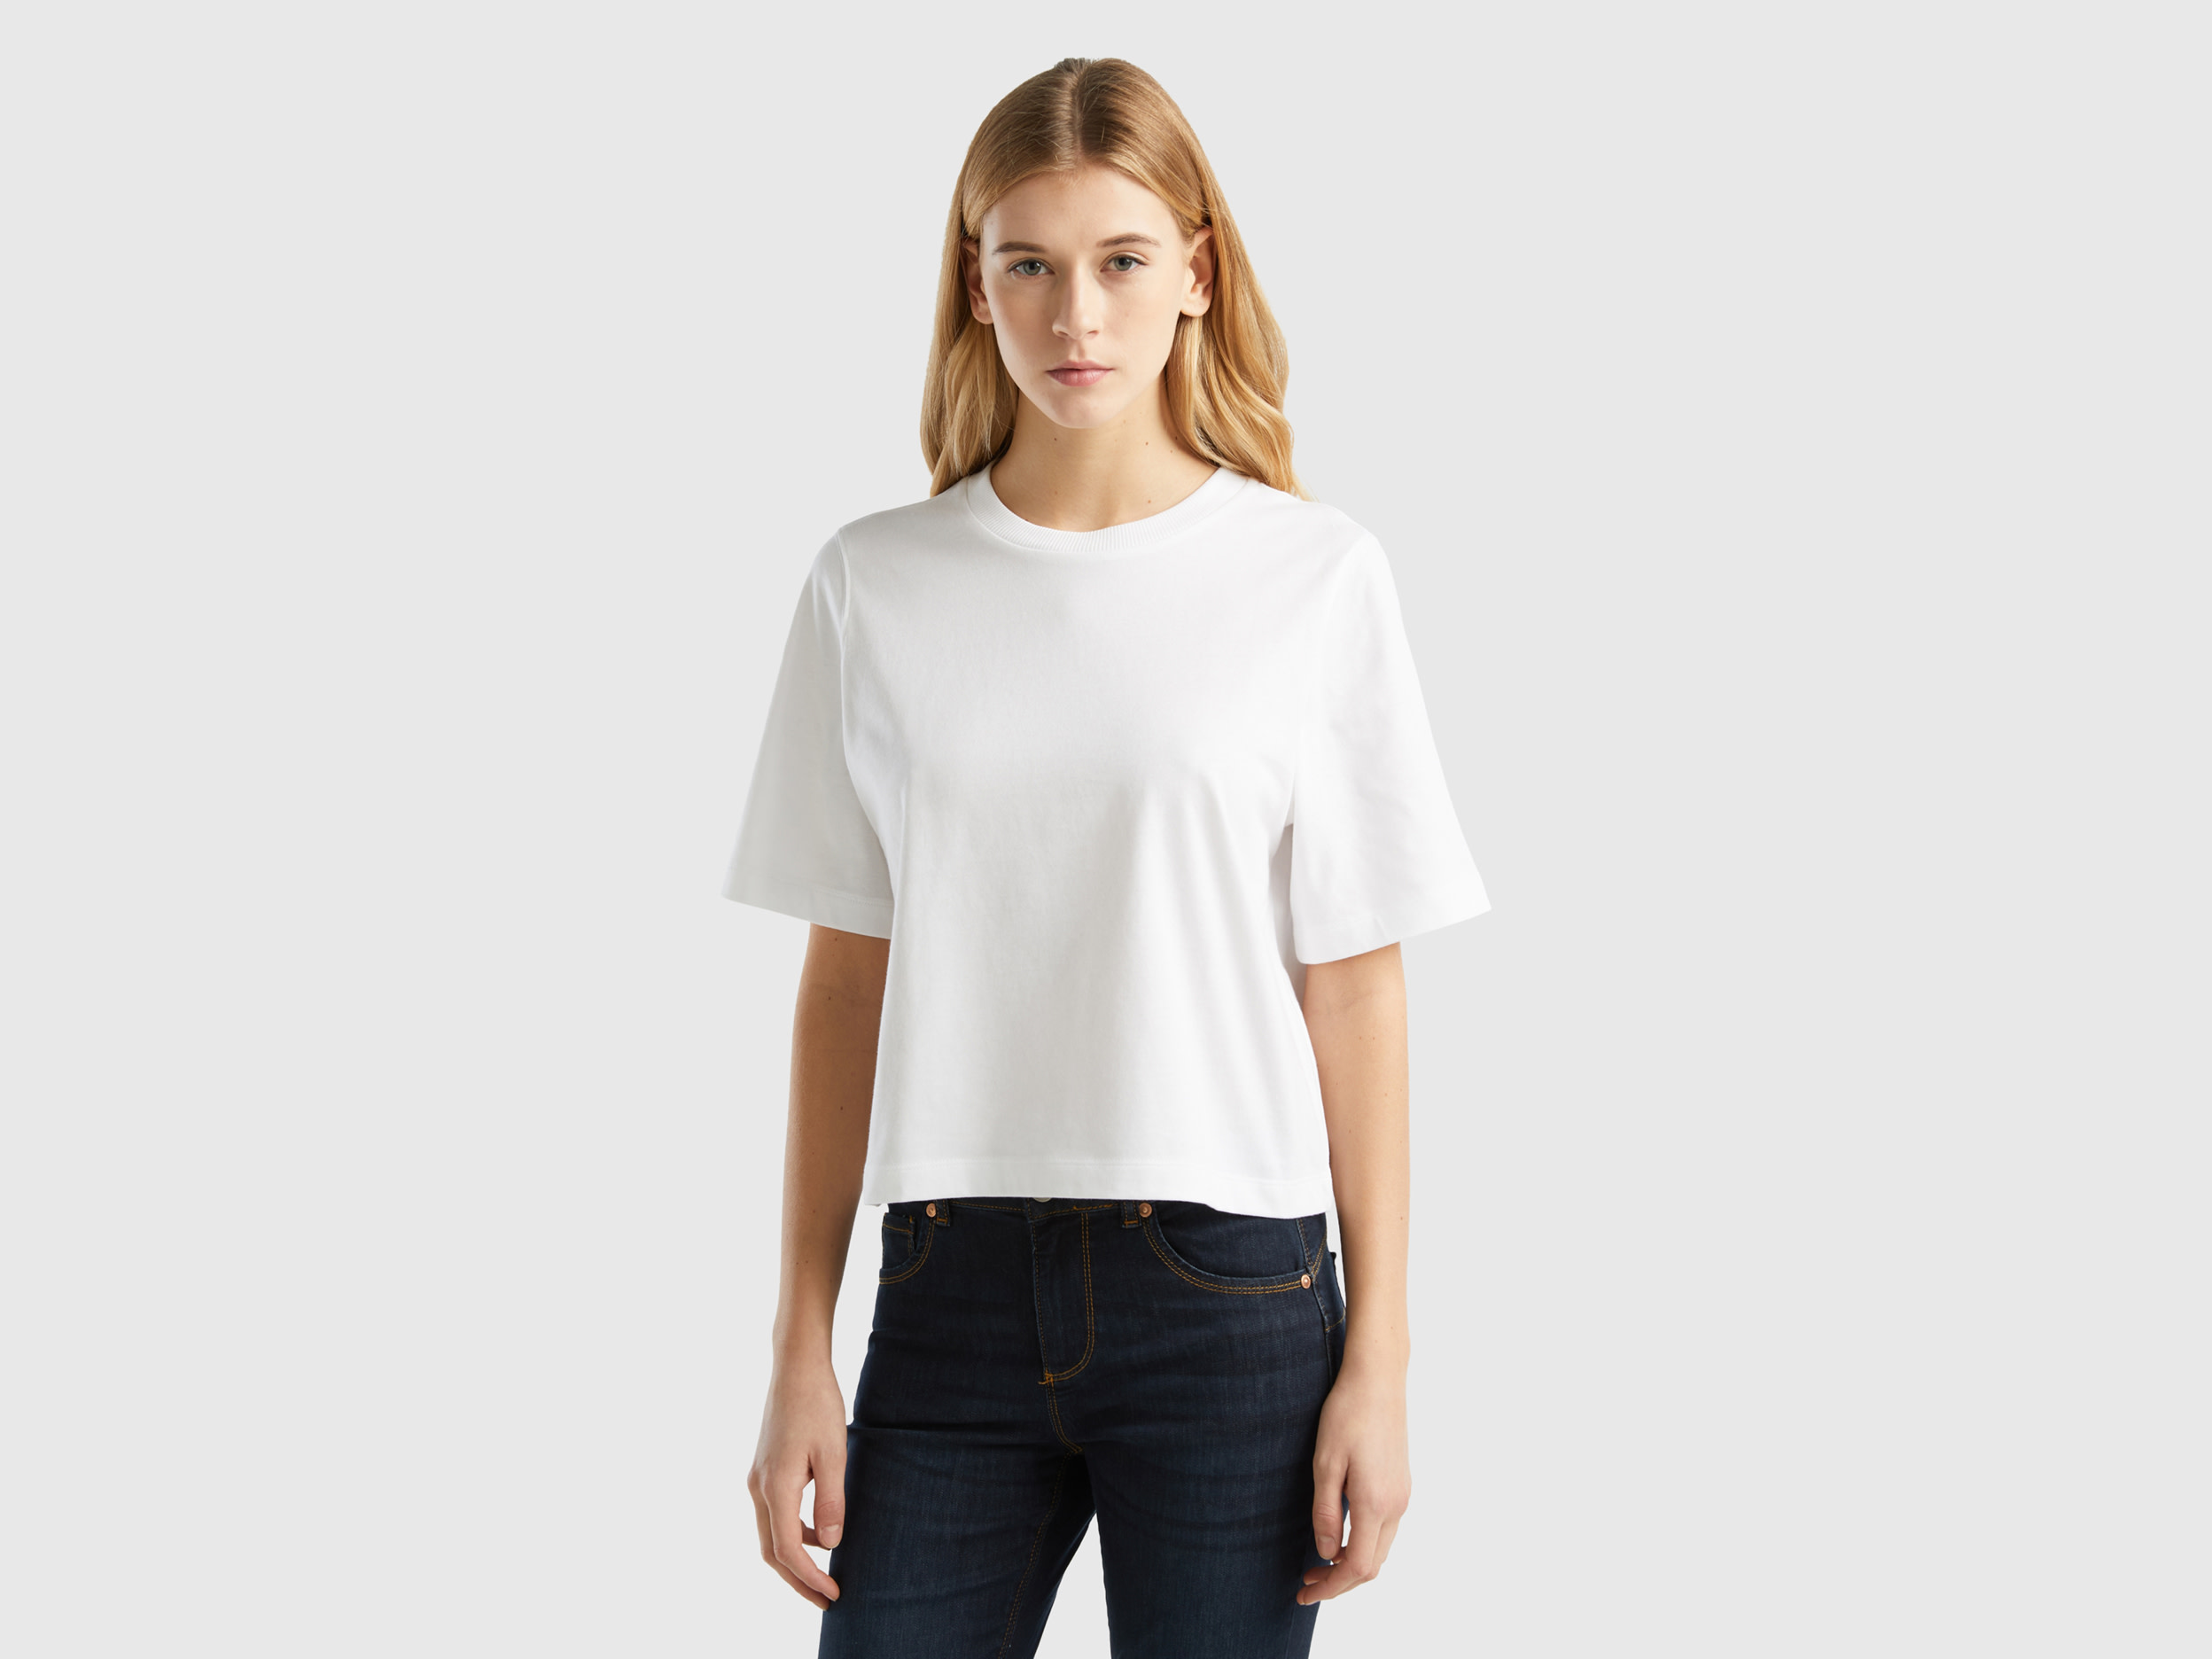 Benetton, 100% Cotton Boxy Fit T-shirt, size XXS, White, Women